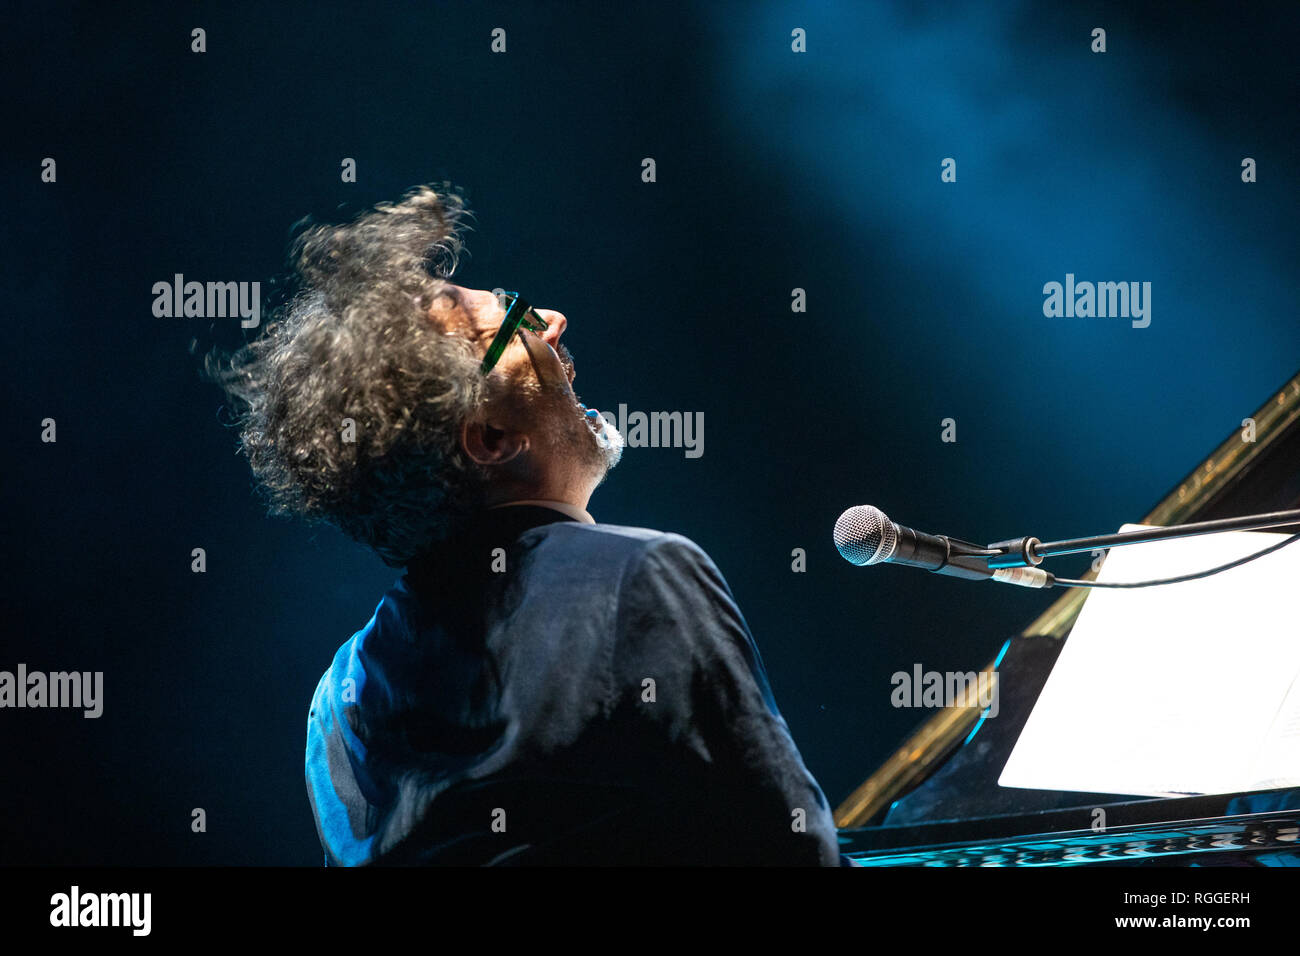 Fito Páez visto eseguire durante il concerto in Spagna. Fito Páez, uno dei grandi argentino popolare musica rock artisti, torna in Spagna, al Circo prezzo, con il suo pianoforte tour, una rassegna dei più importanti brani nei suoi 30 anni di carriera artistica. Foto Stock